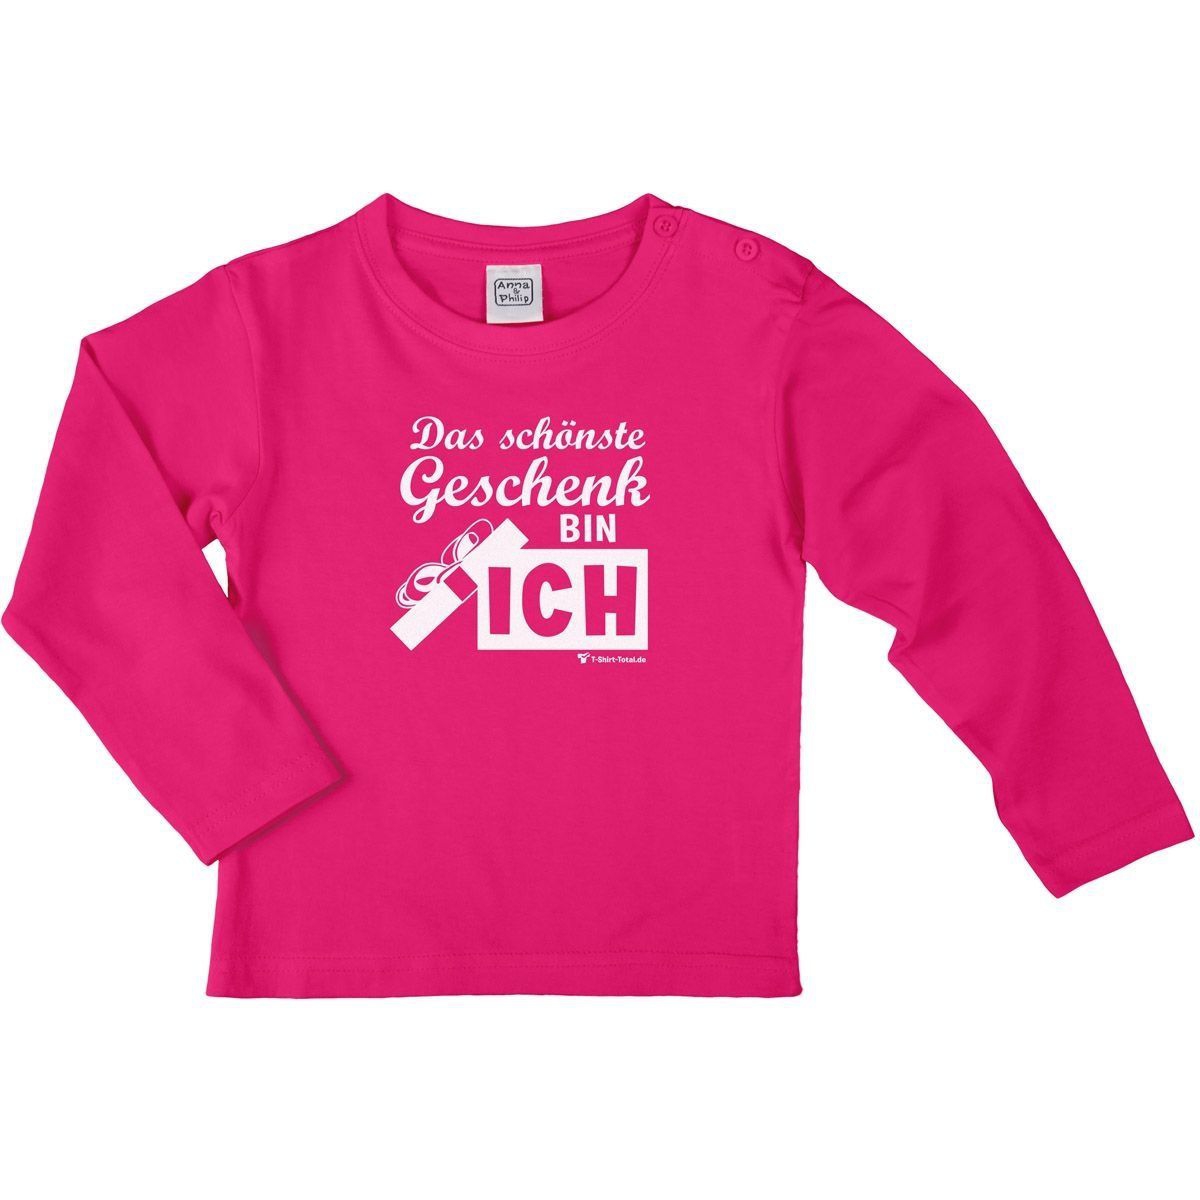 Schönste Geschenk Kinder Langarm Shirt pink 56 / 62